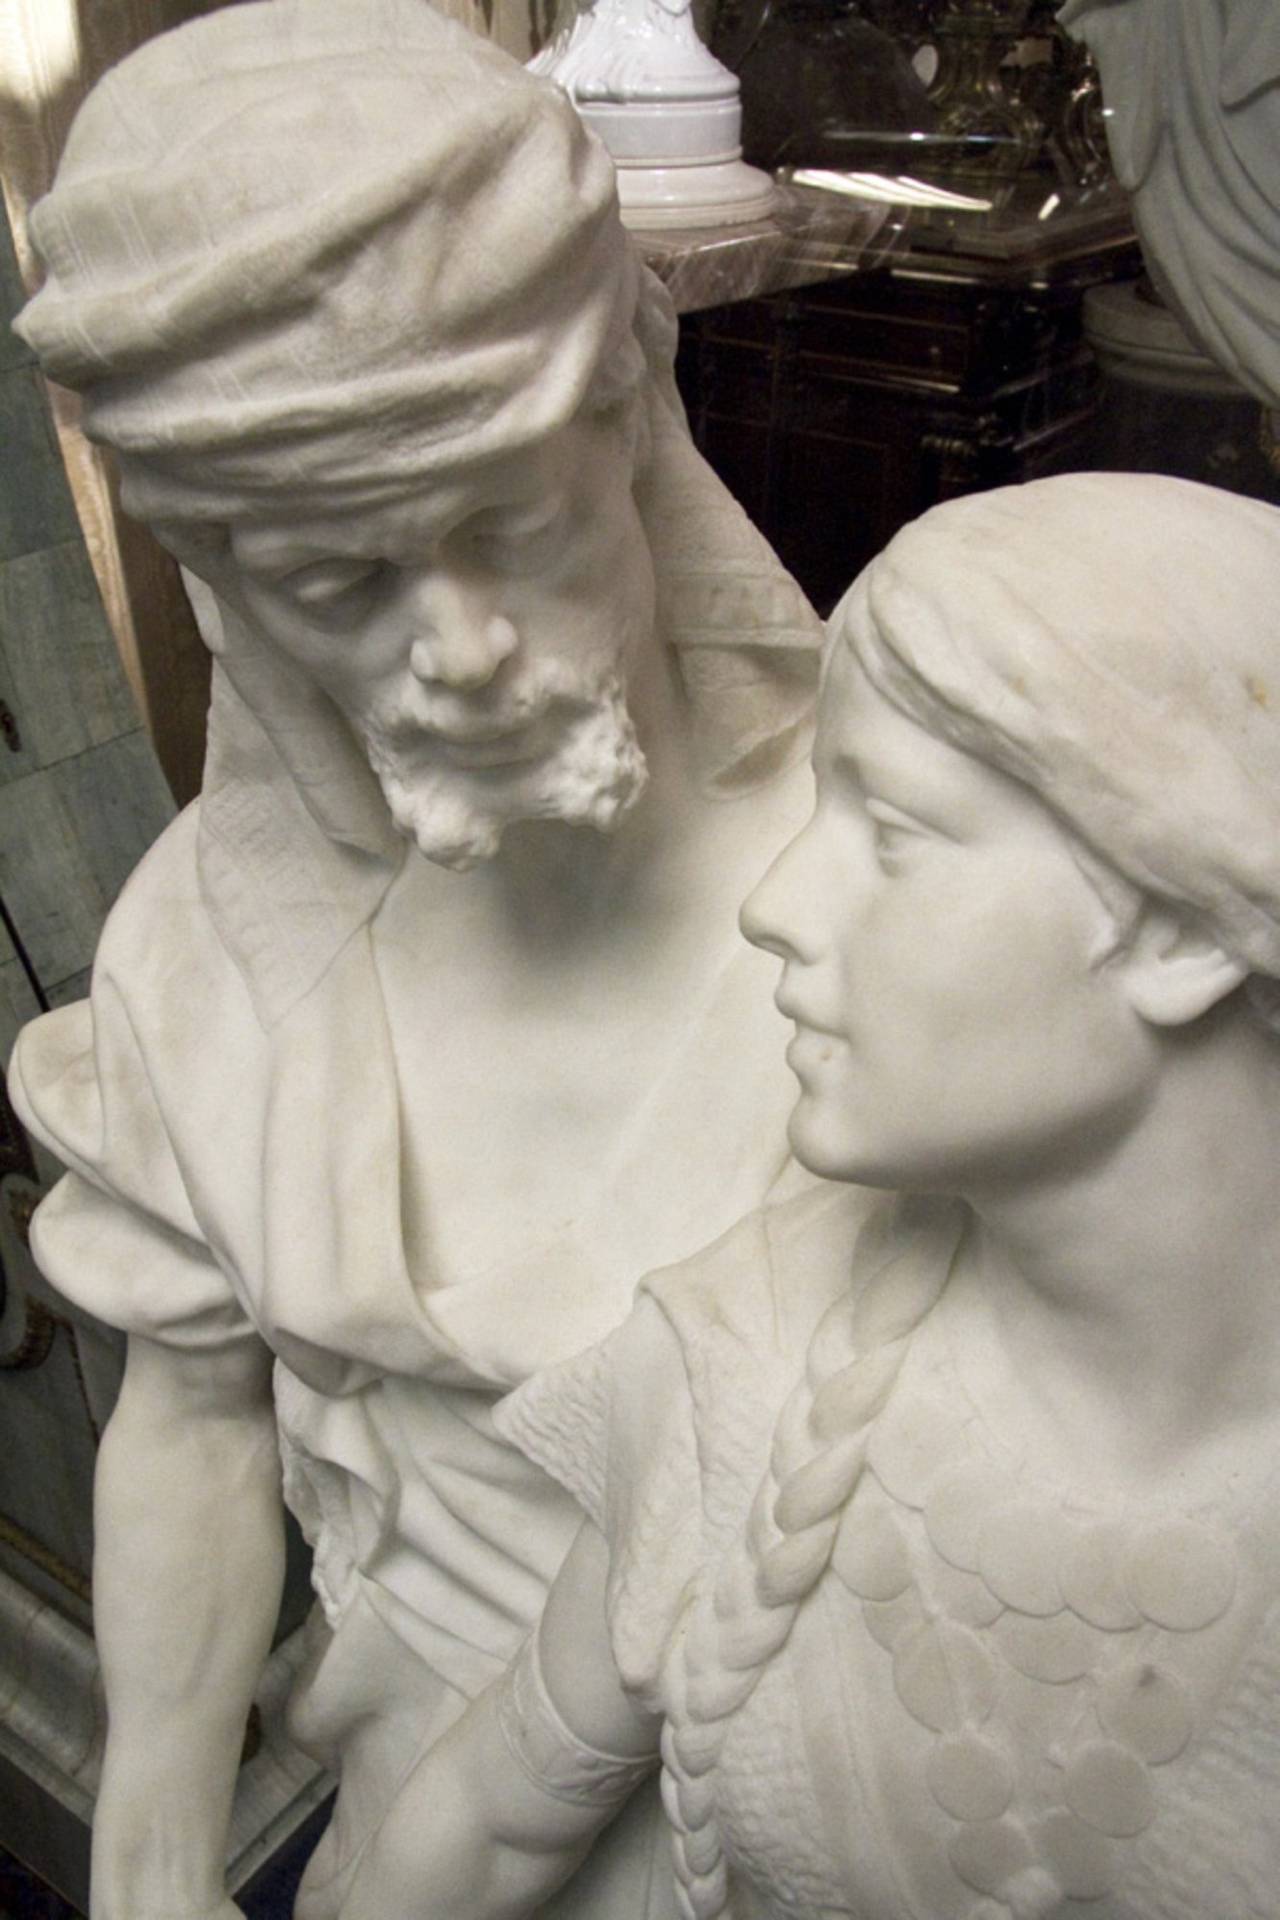 Importante figure orientale en marbre représentant deux amants, signée P. Carados, de taille presque réelle avec une sculpture fantastique
Numéro de stock : SC22